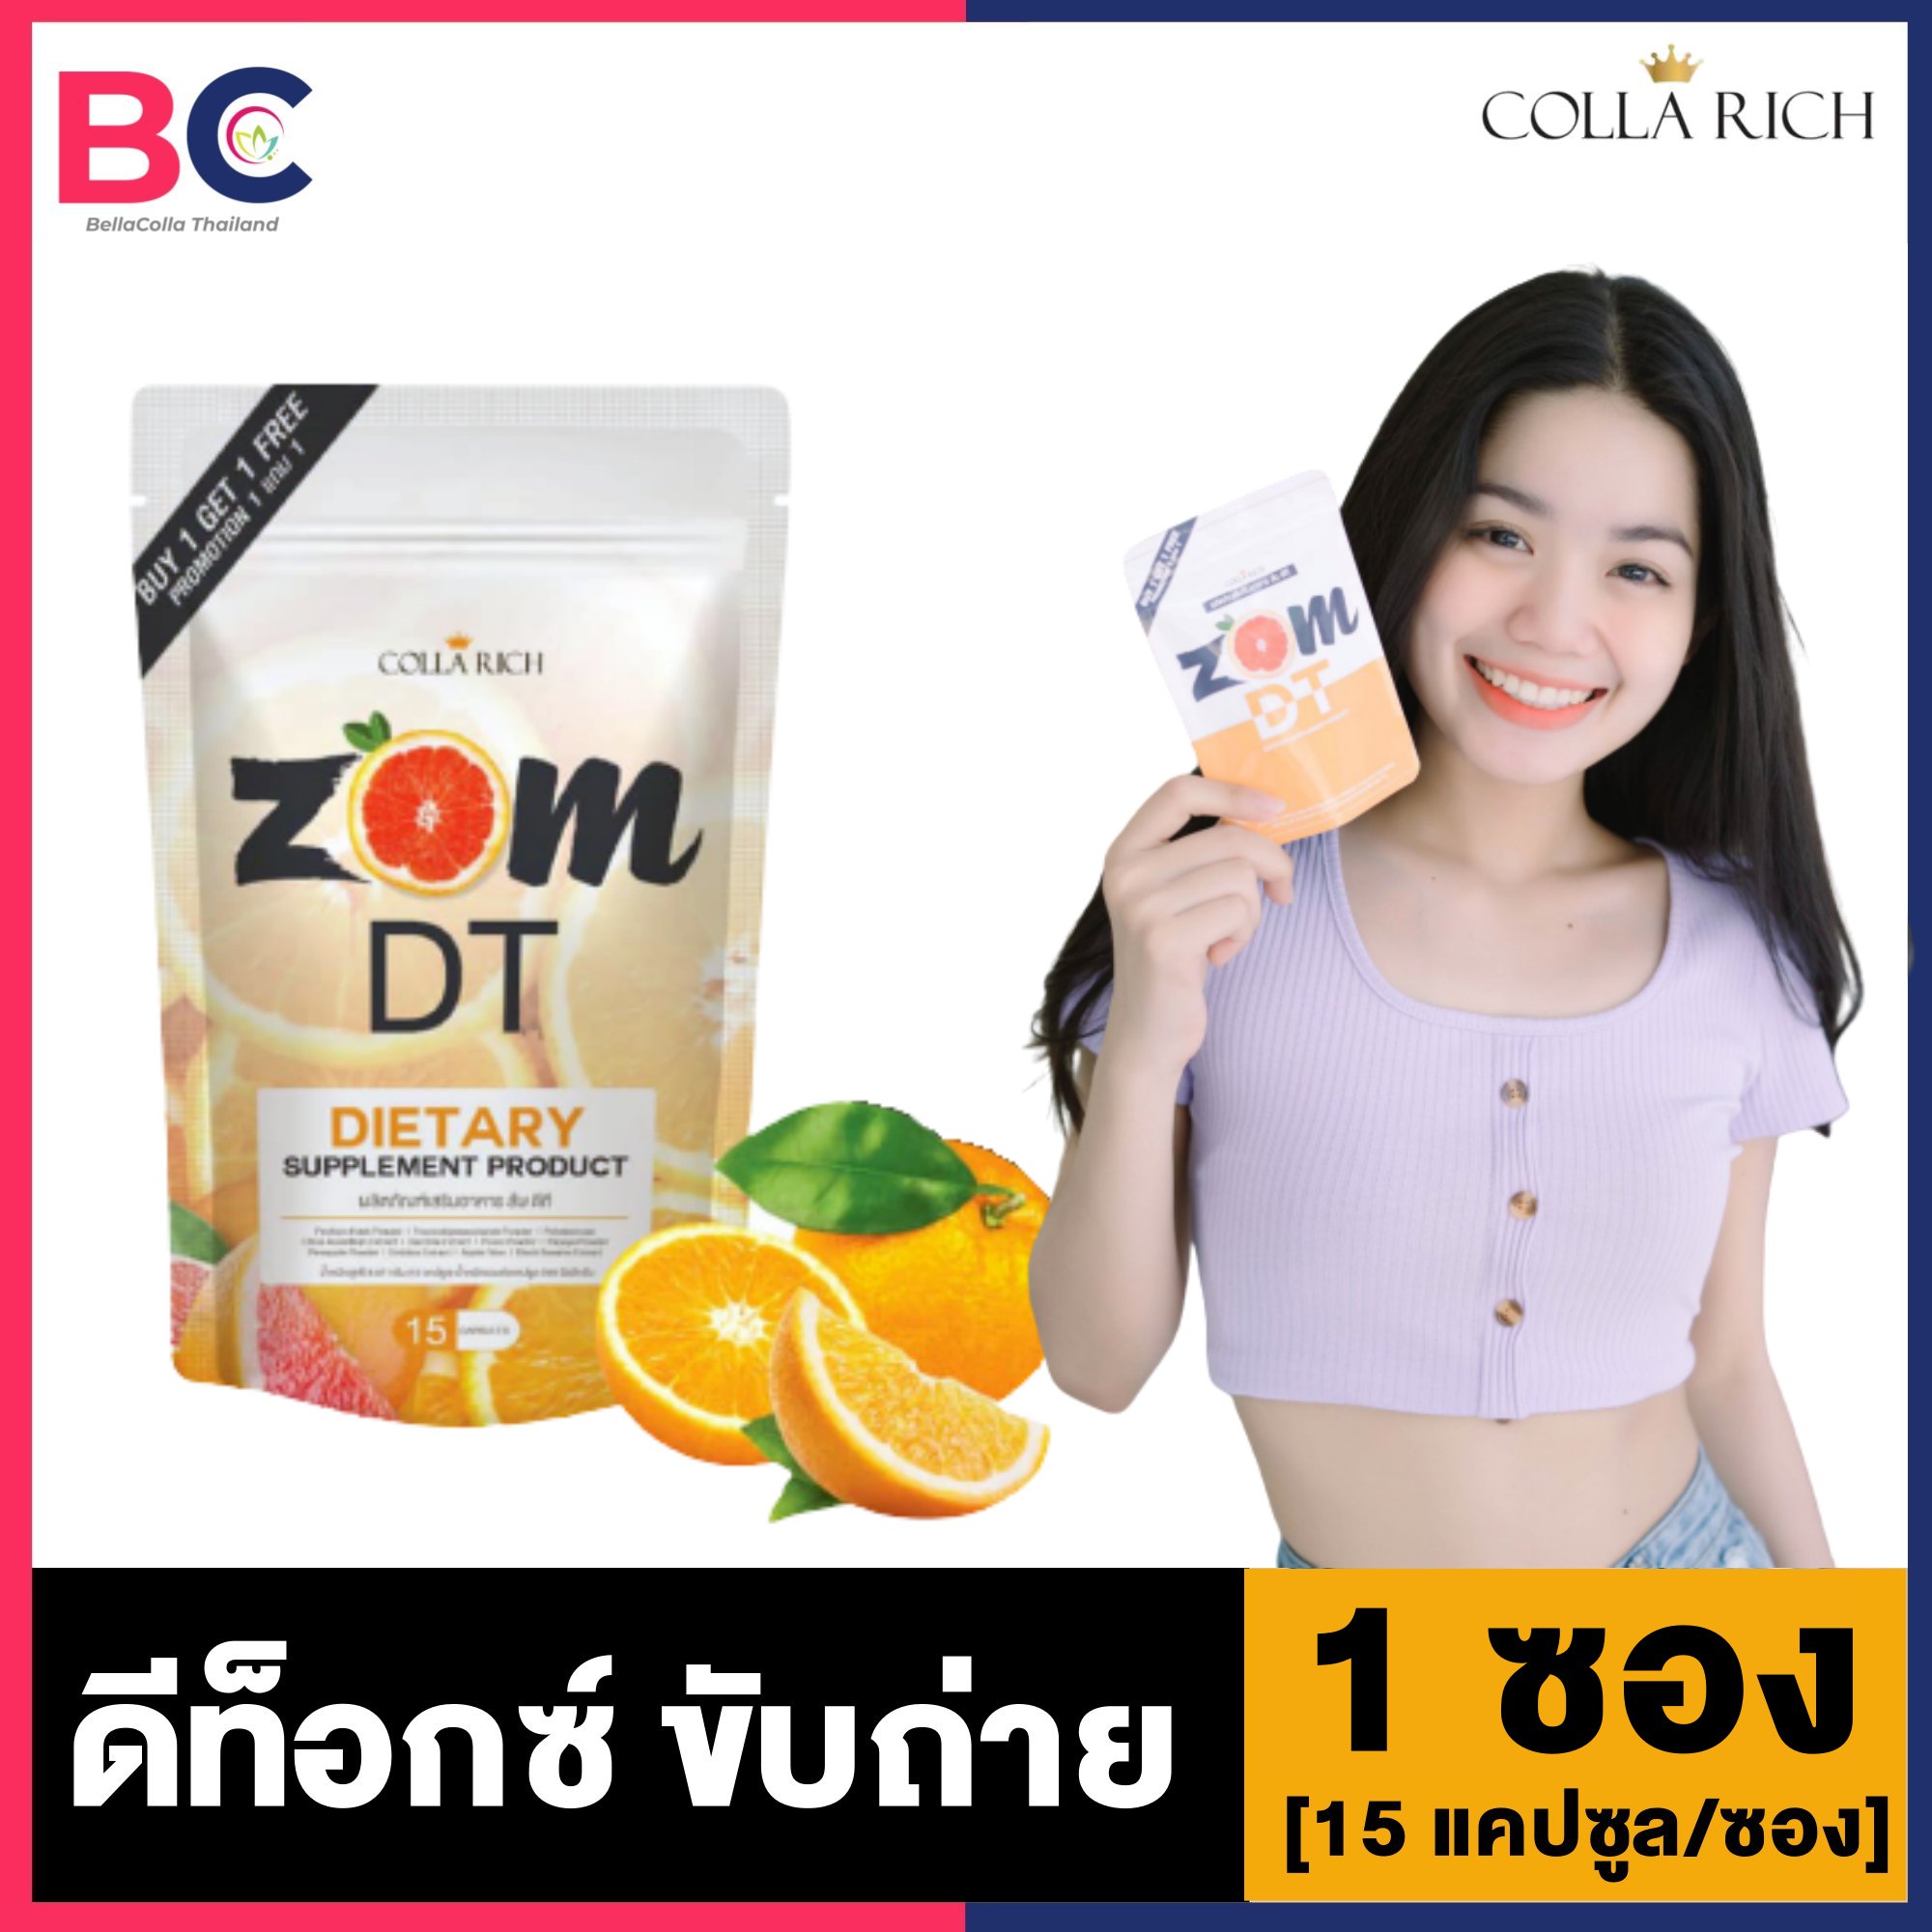 ส้มดีที ZOM DT [1 ซอง] [15 แคปซูล/ซอง] [ไม่แถม] ดีท็อกซ์Zom Dt ส้มดีท็อก อาหารเสริมดีท็อกซ์ By Collarich